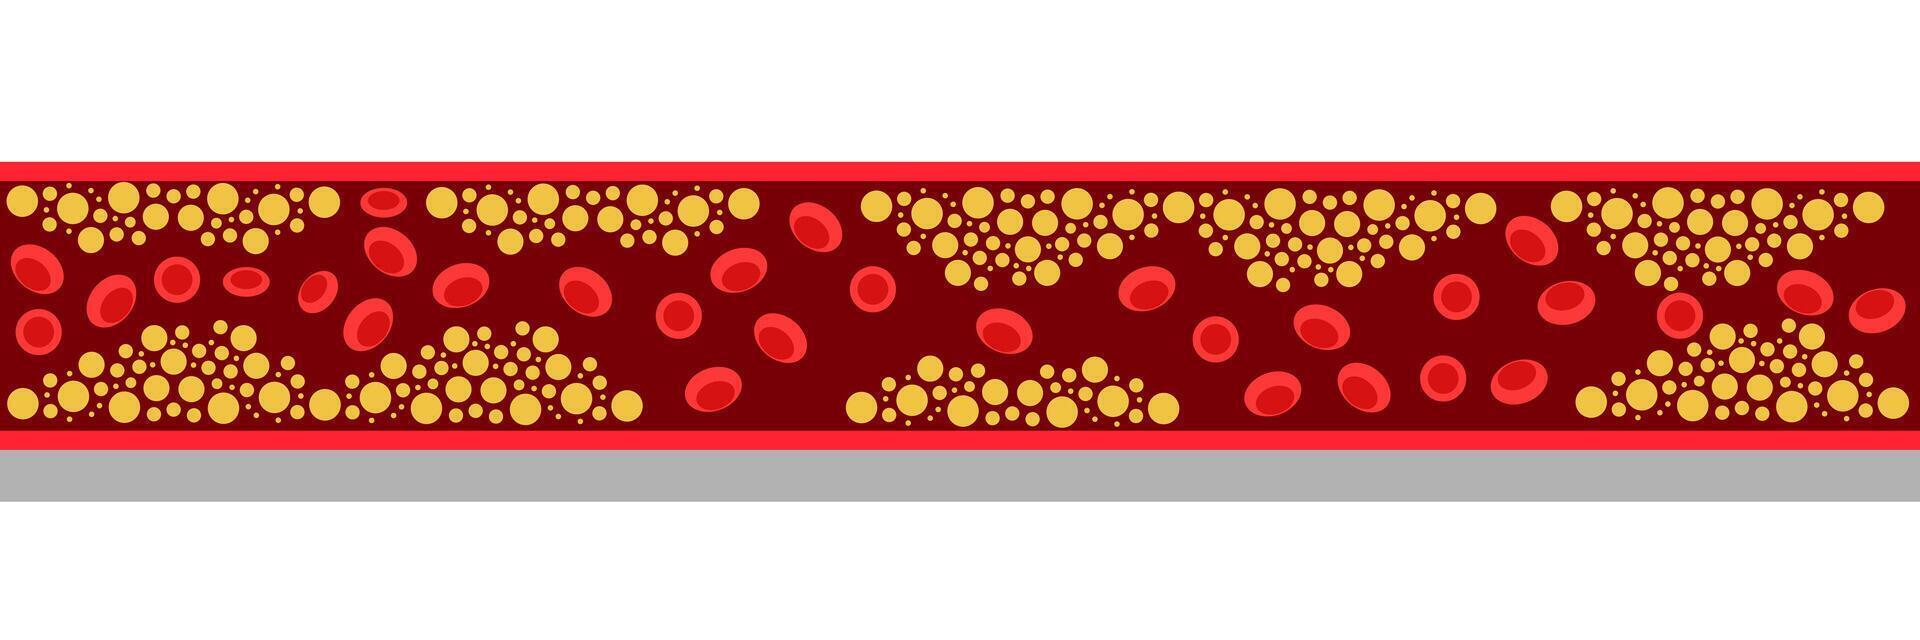 Cholesterin Niveau auf verstopft Blut Schiff medizinisch Schlecht hdl Lipoprotein. hoch und niedrig Fett Prüfung Indikator. Atherosklerose Risiko. Gesundheitswesen Konzept. Vektor Illustration